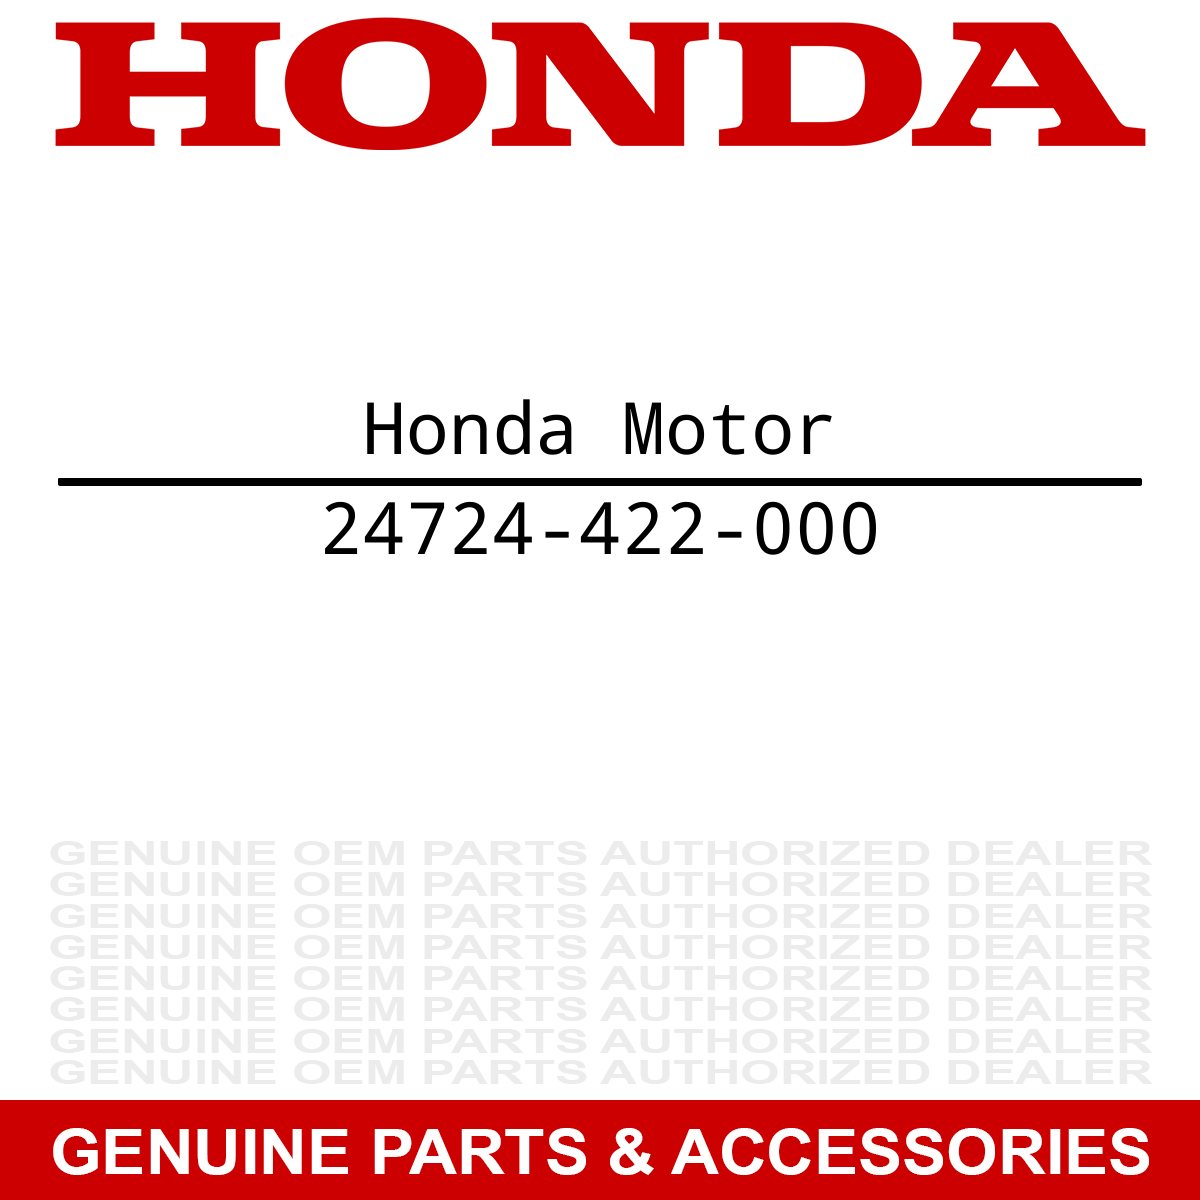 Honda 24724-422-000 Dust Cover VTX1800S VTX1800C VTX1300S VTX1300C 1000 1100 150 200 250